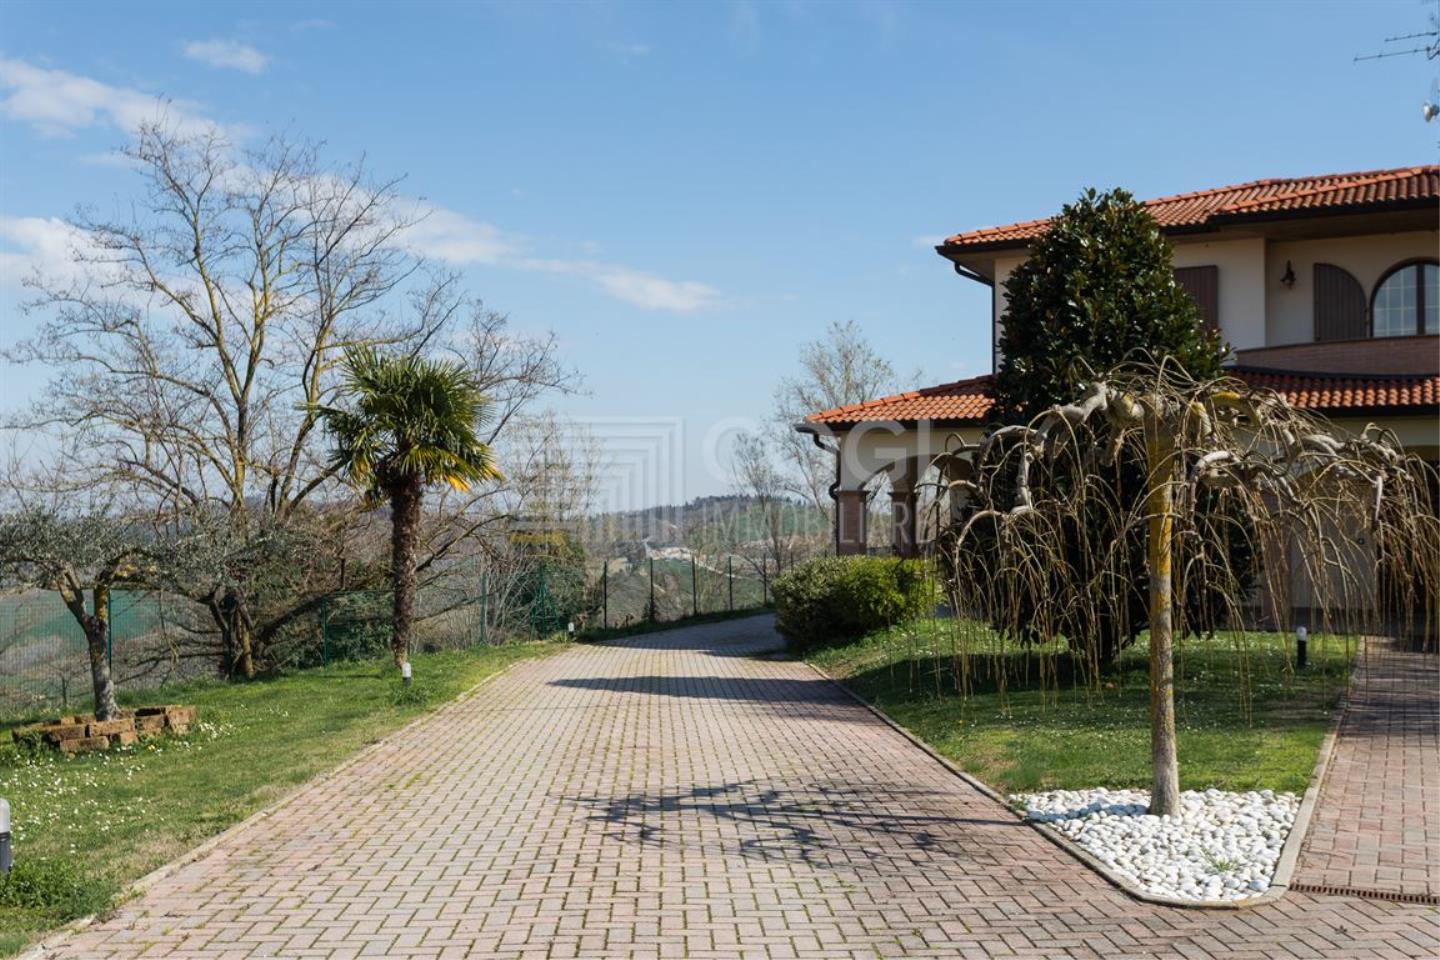 Villa in Vendita Riolo Terme